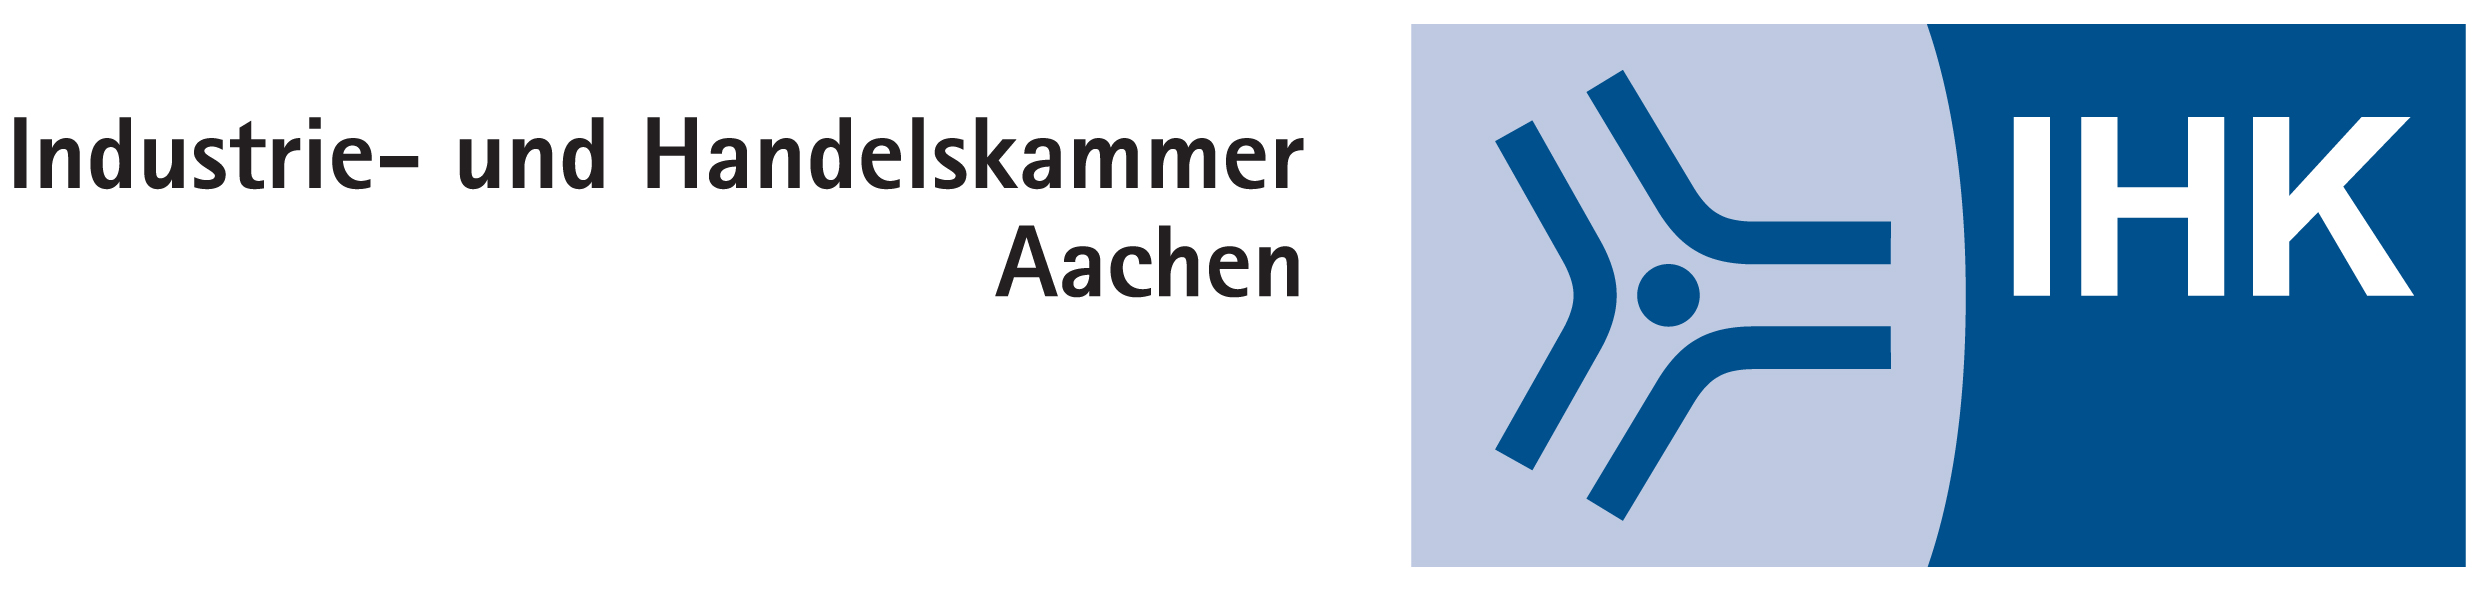 IHK Logo, schwarz-weißer Schriftzug mit blauen Zeichen auf weißem oder blauen Hintergrund